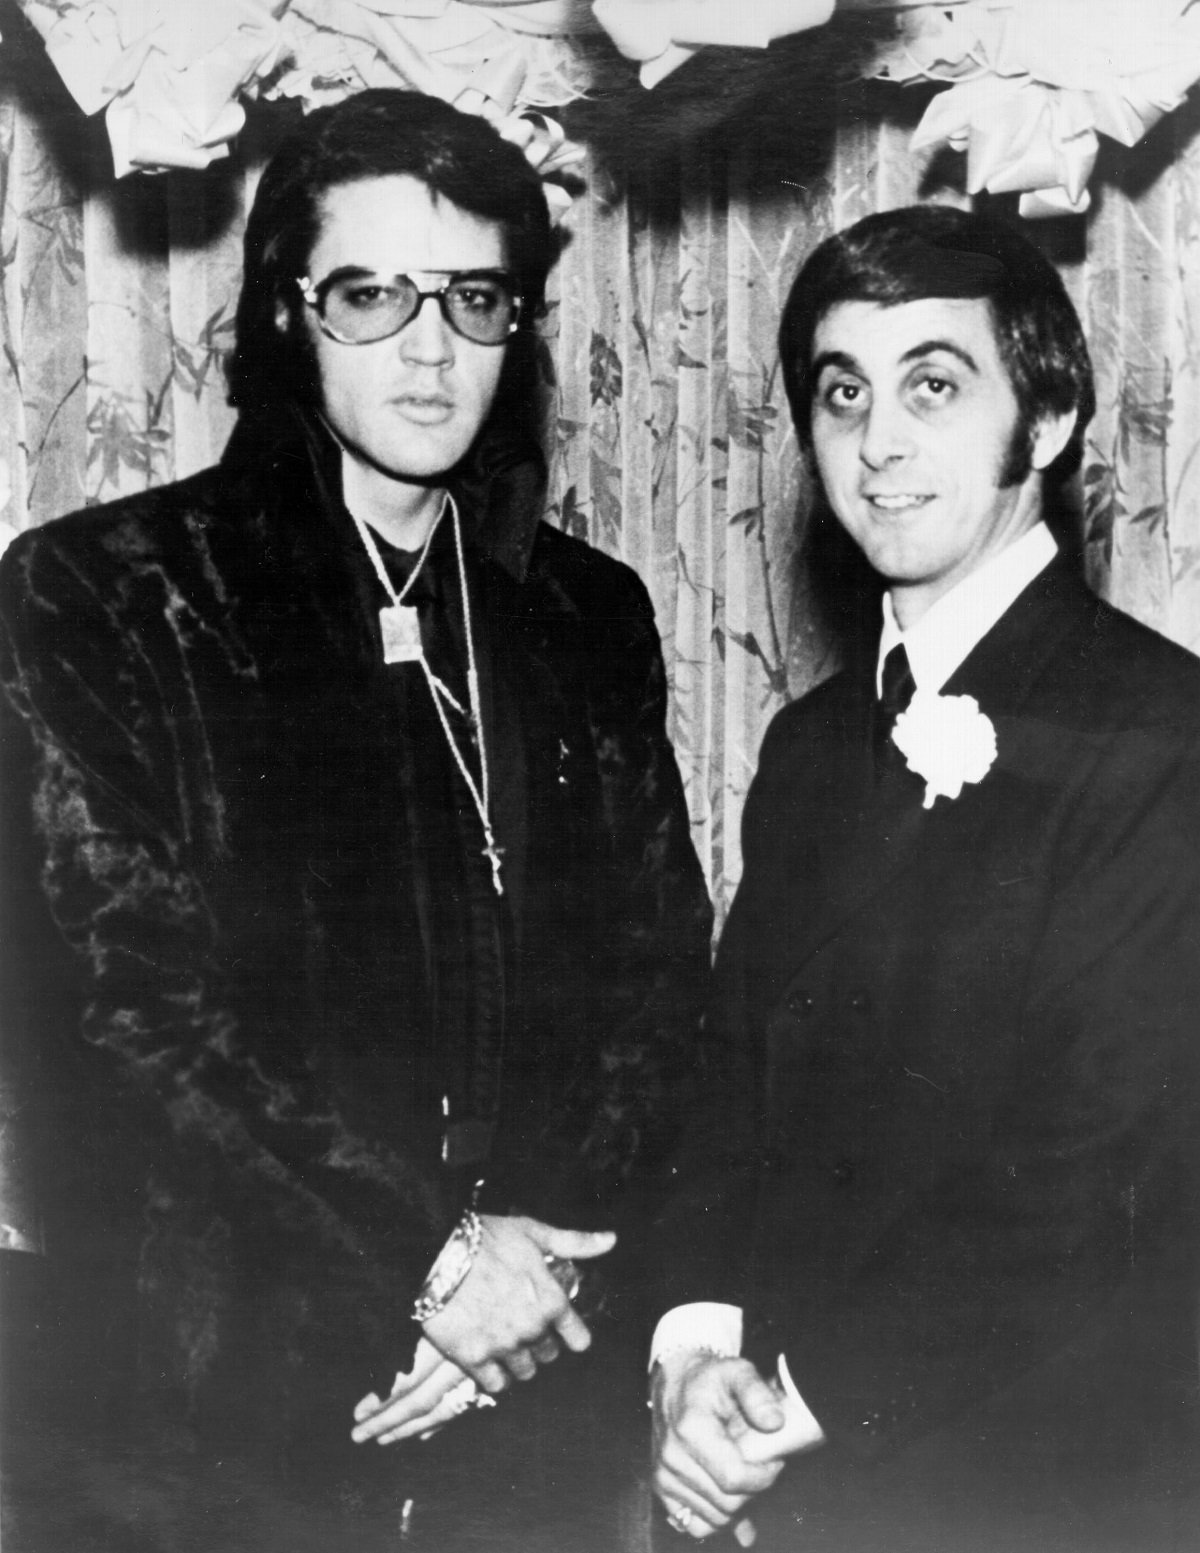 Elvis Presley and George Klein in 1970